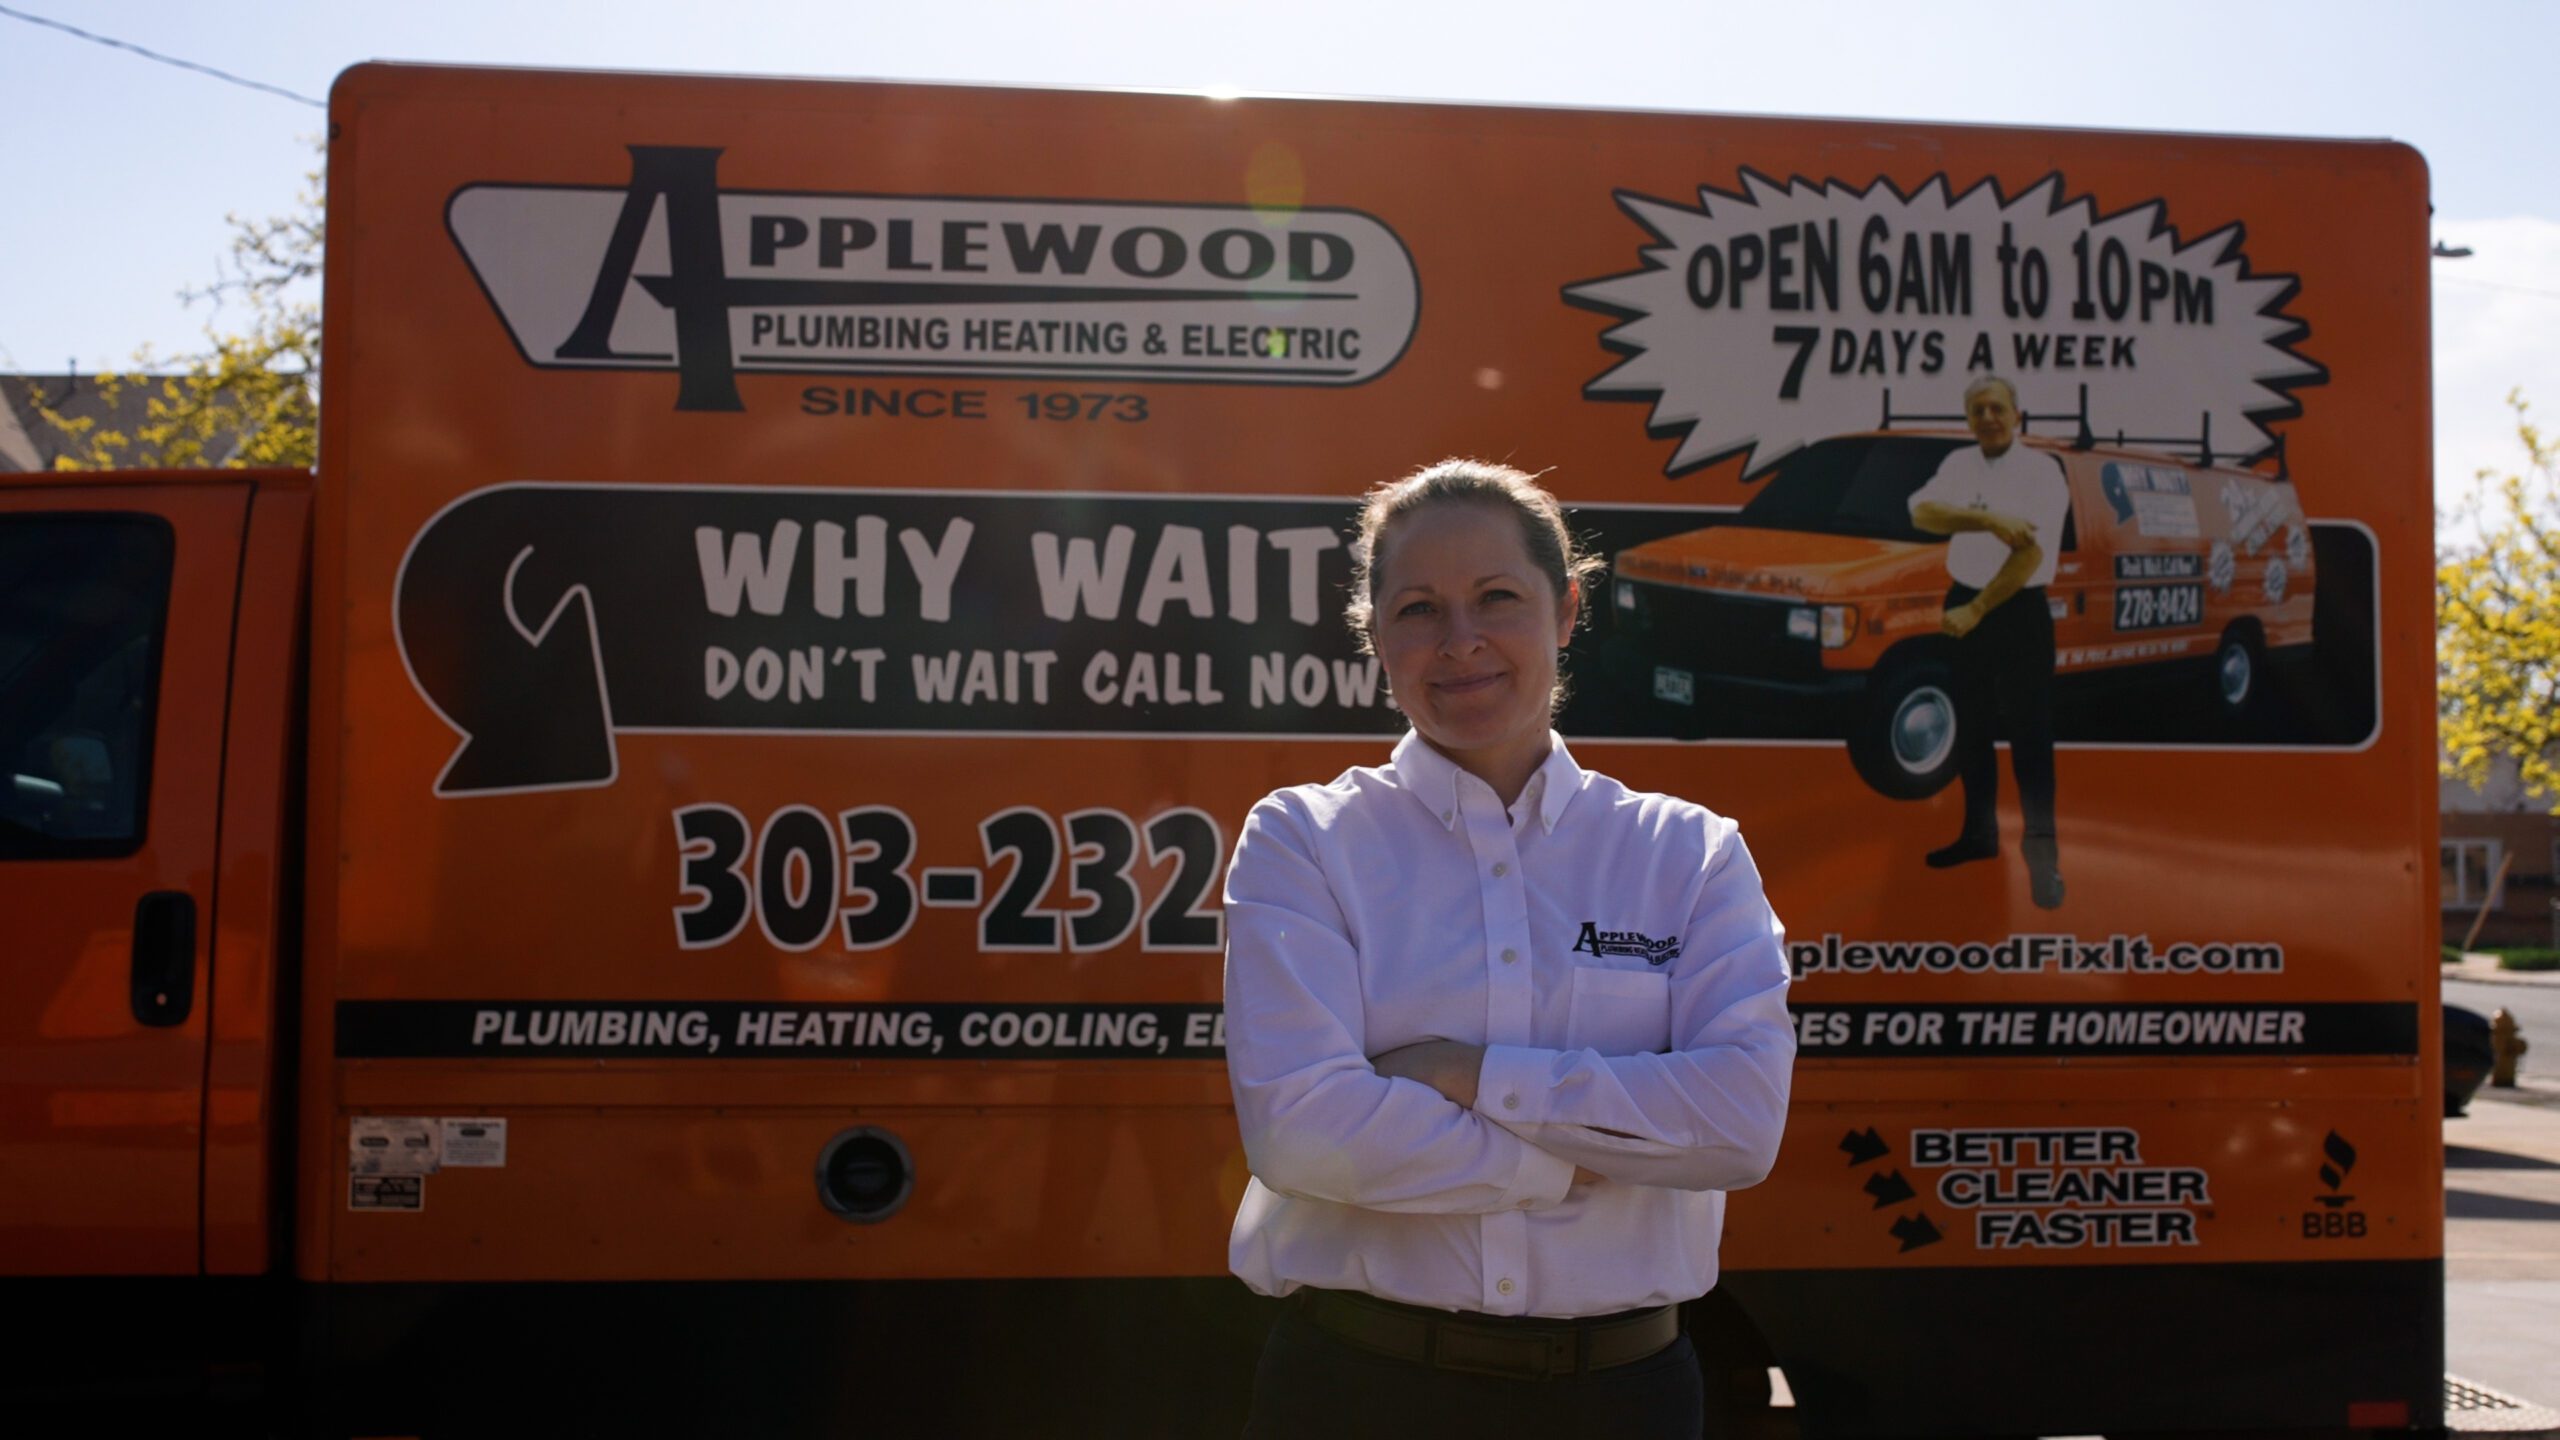 applewood employee standing in front of orange truck